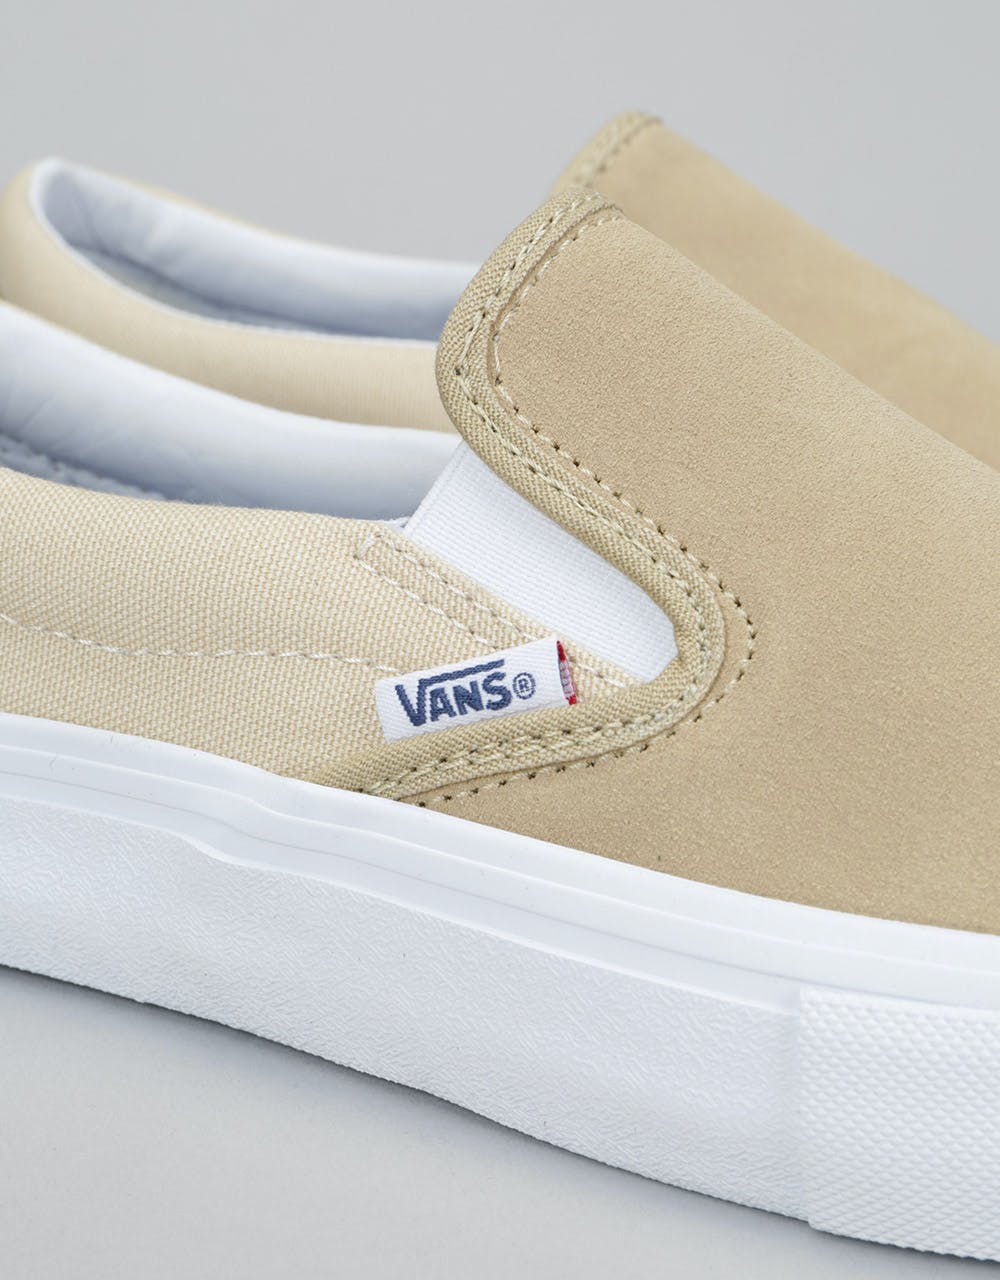 Vans Slip On Pro Skate Shoes - Sand/White